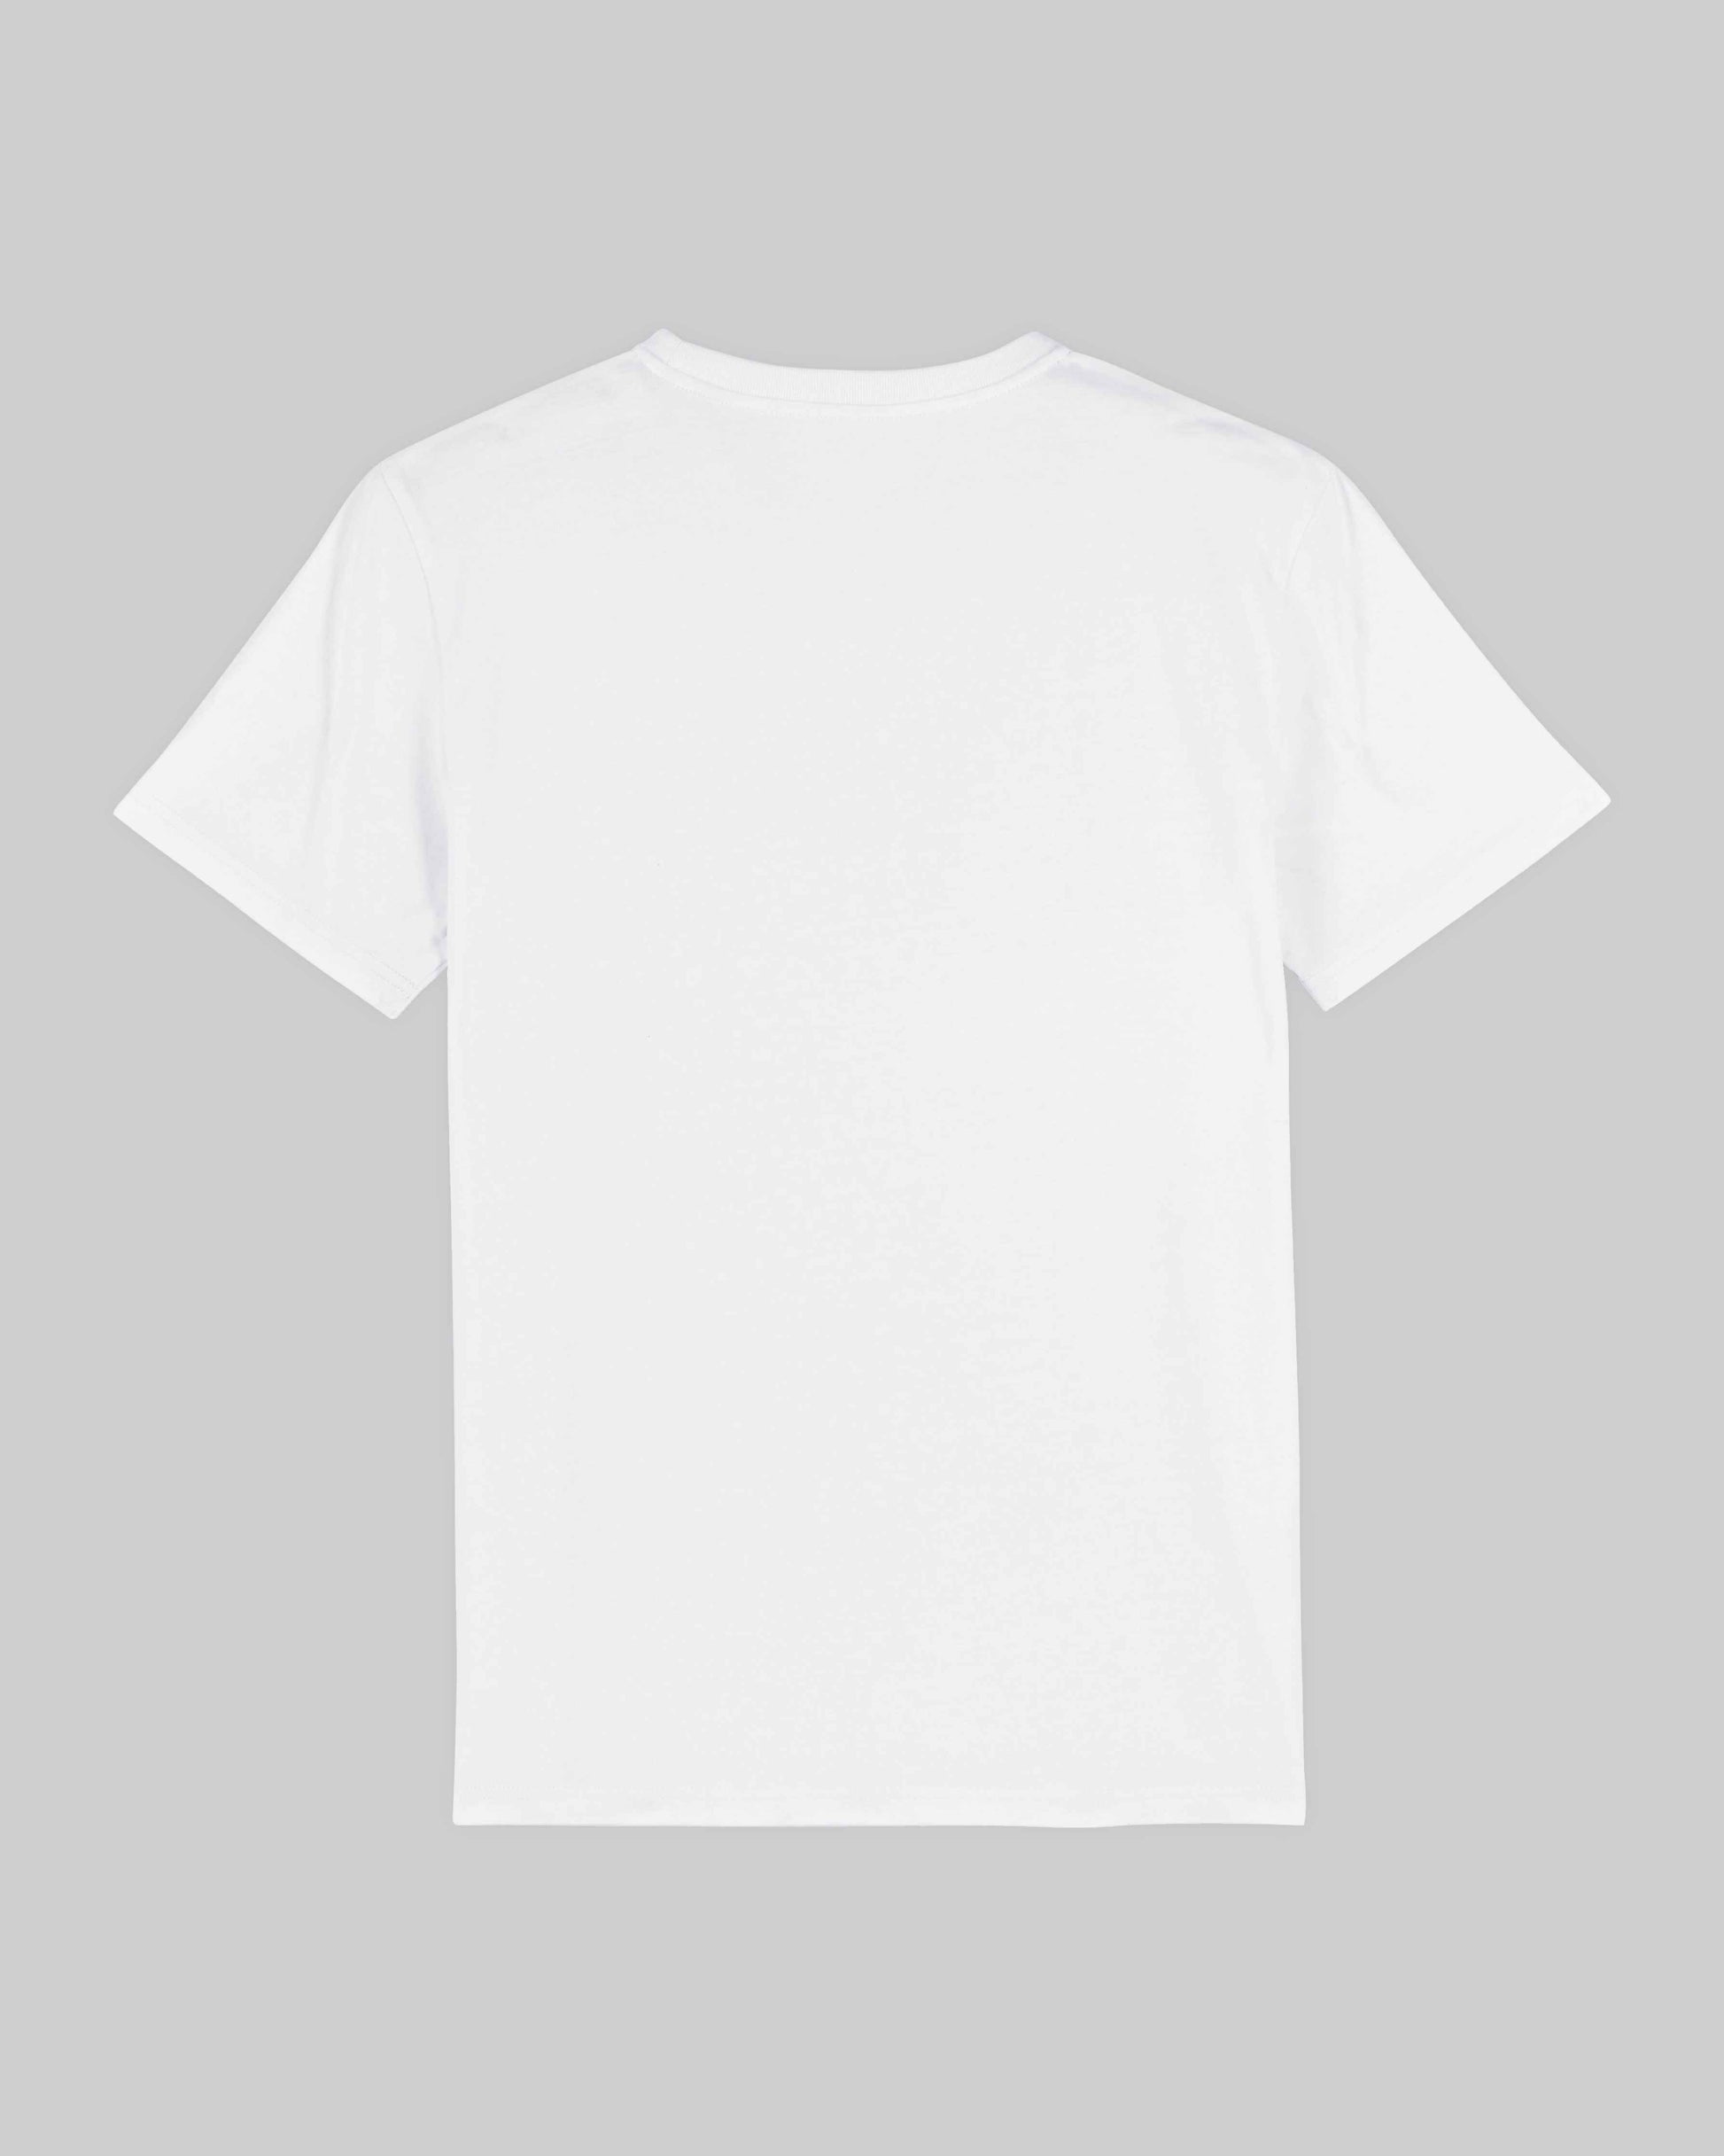 EINHORST® unisex Organic Shirt in Weiß mit dem Motiv "pride Herz", Bild von Shirt von hinten